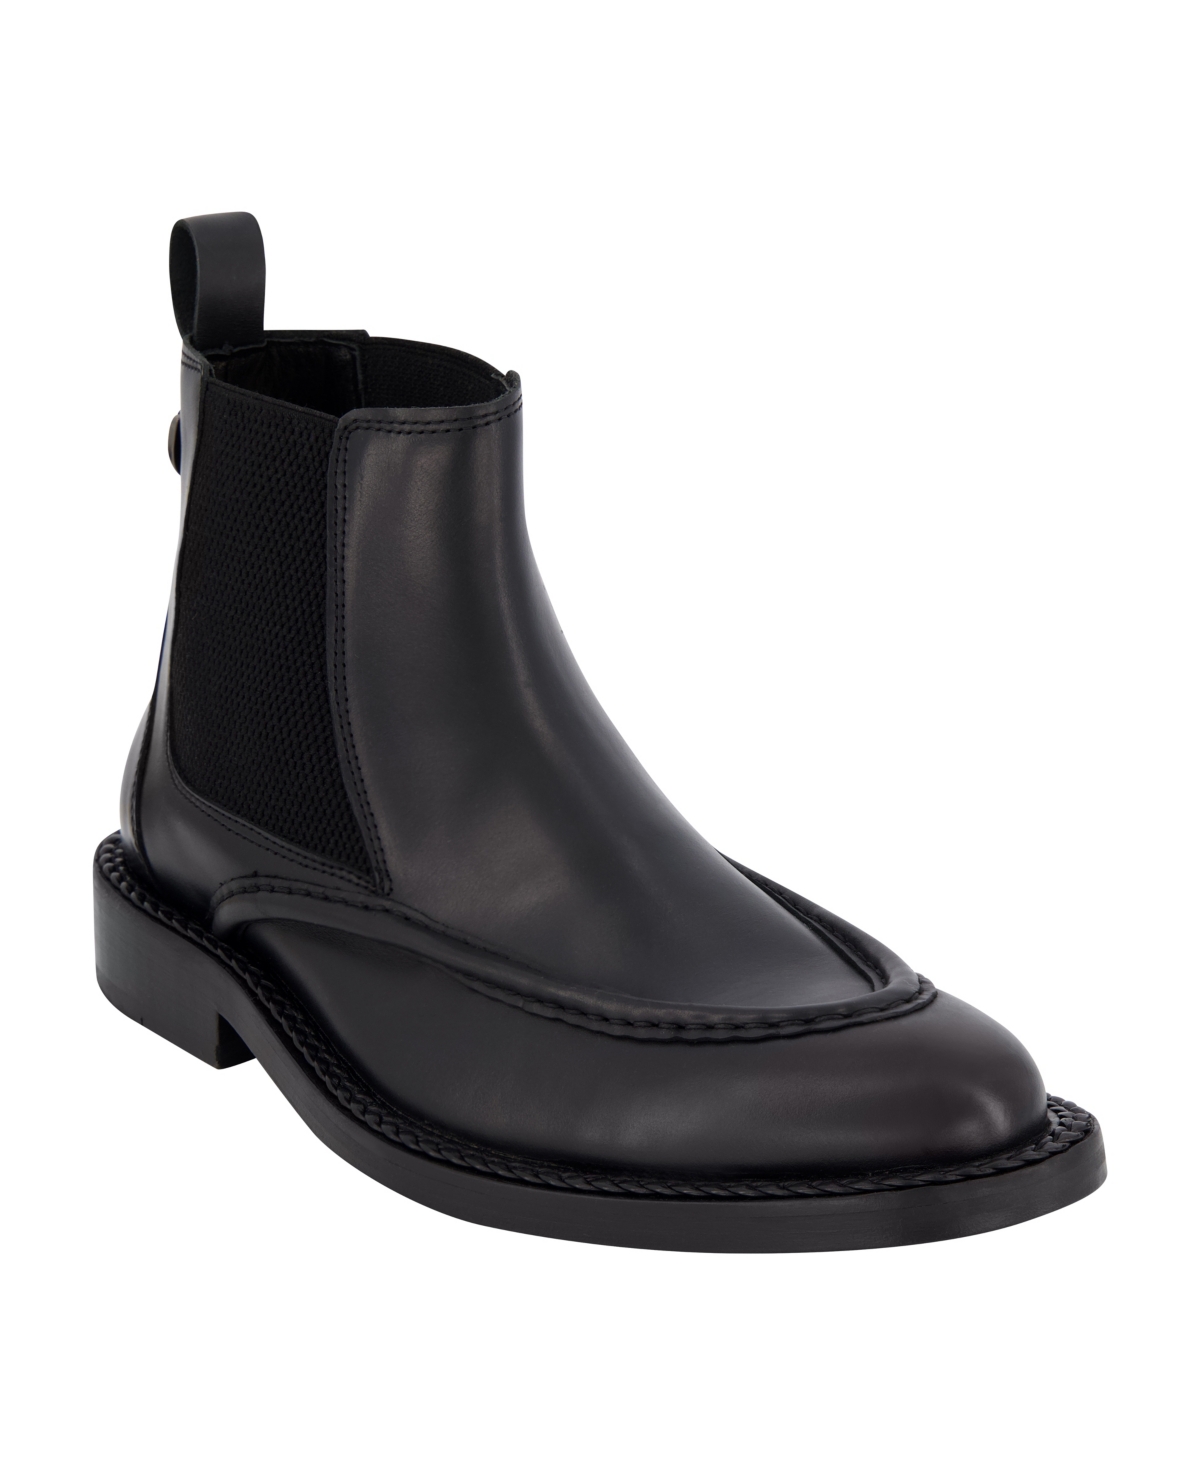 Men's White Label Leather Moc Toe Chelsea Boots - Black